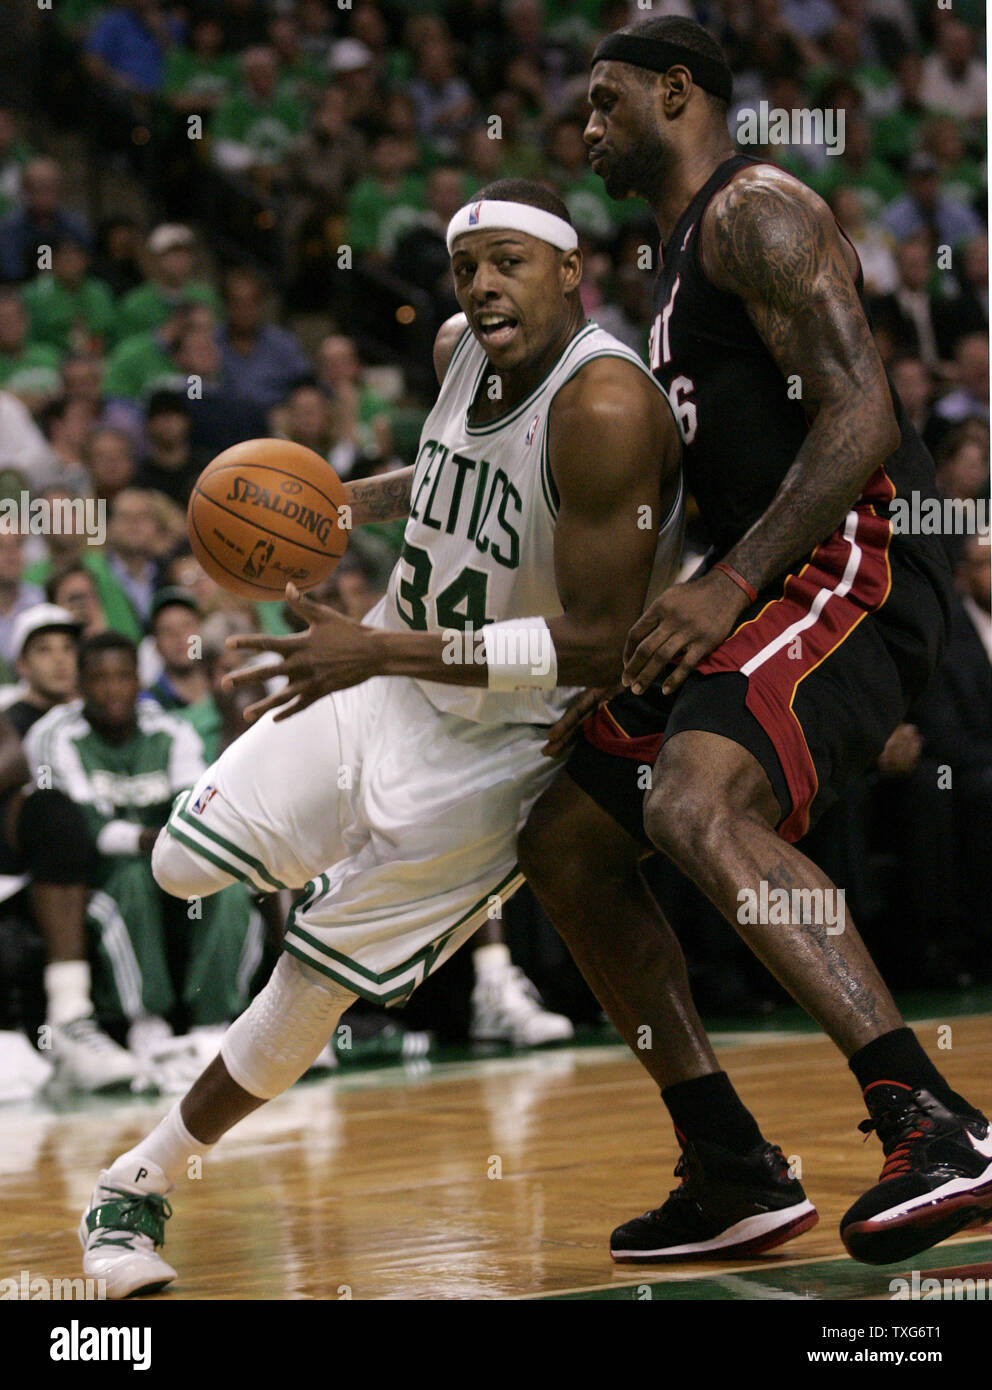 Boston Celtics, Paul Pierce (34) Laufwerke mit dem Netz gegen Miami Heat, LeBron James in der ersten Hälfte der Nacht Spiel am TD Garden in Boston, Massachusetts am 26. Oktober 2010. UPI/Matthew Healey Stockfoto